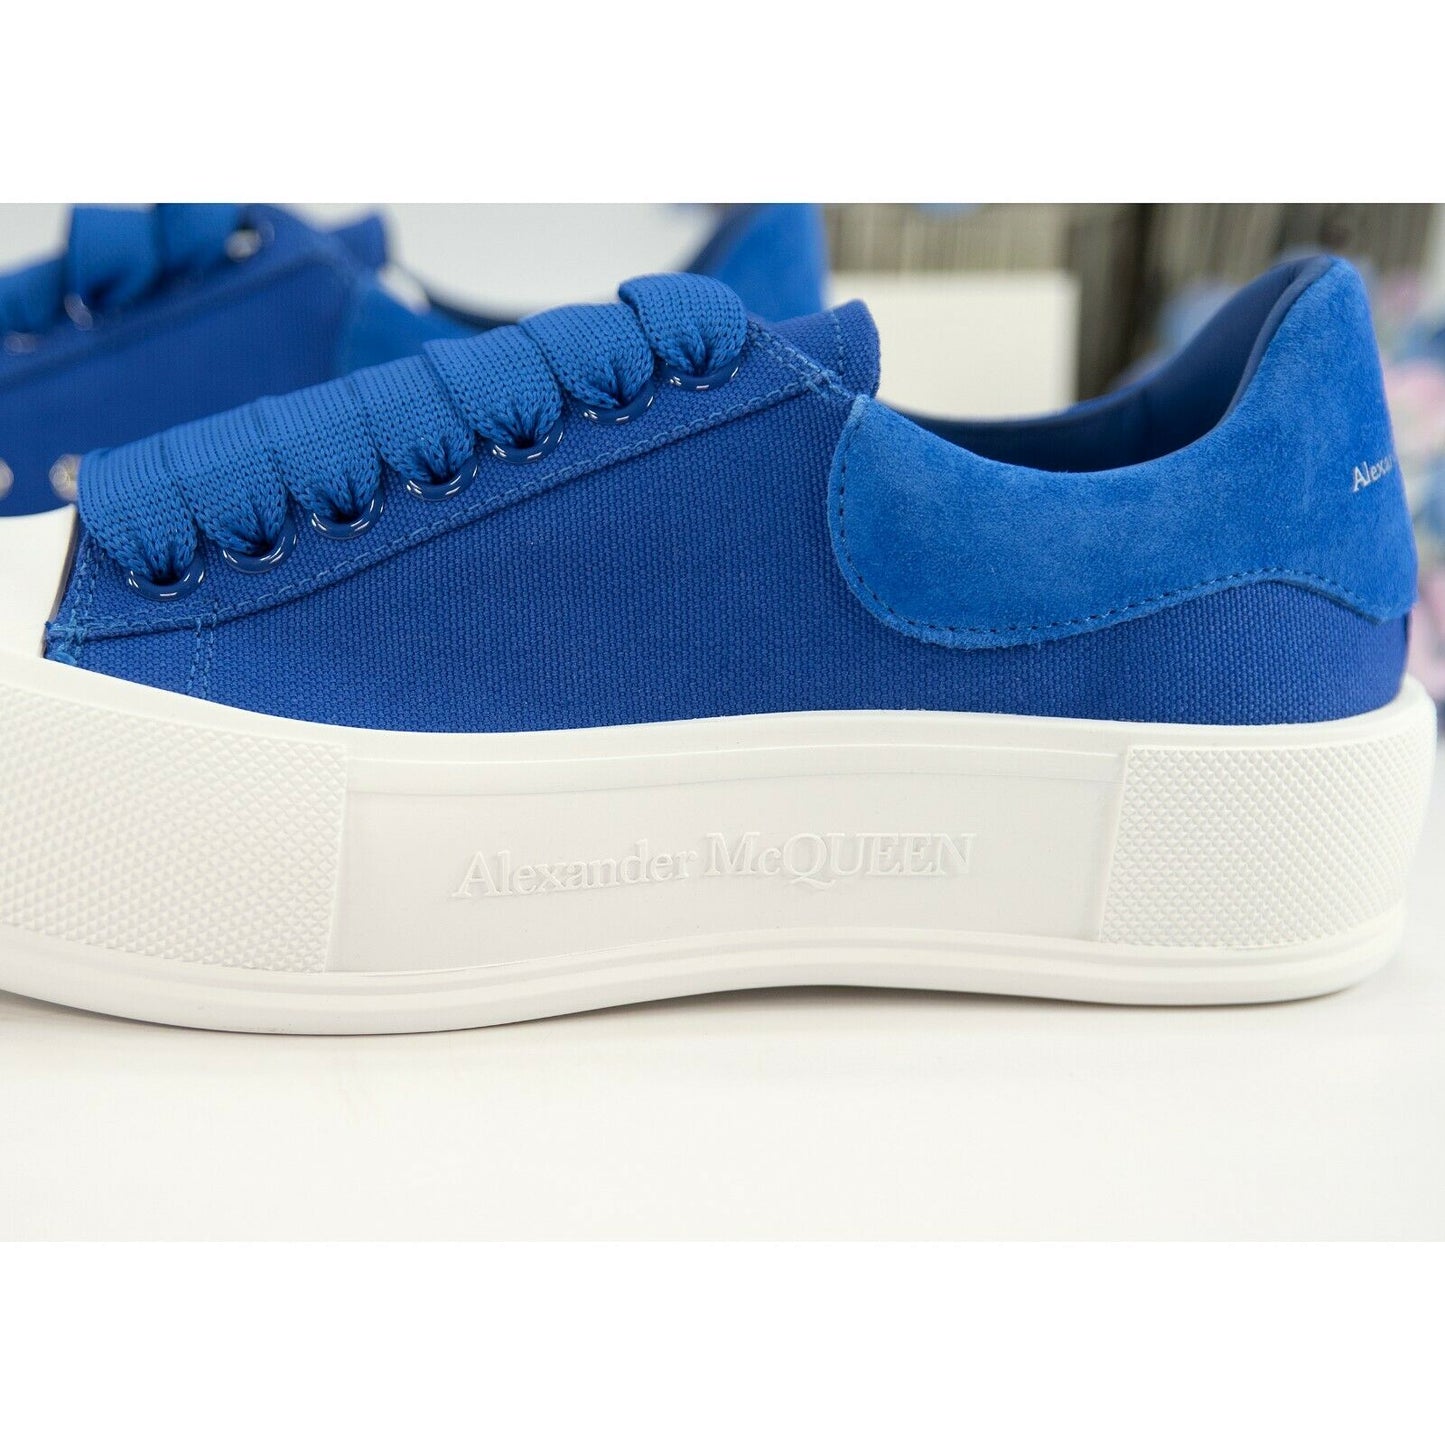 Alexander McQueen Deck Oversized Ultramarine Suede Canvas Sneakers 39.5 NIB